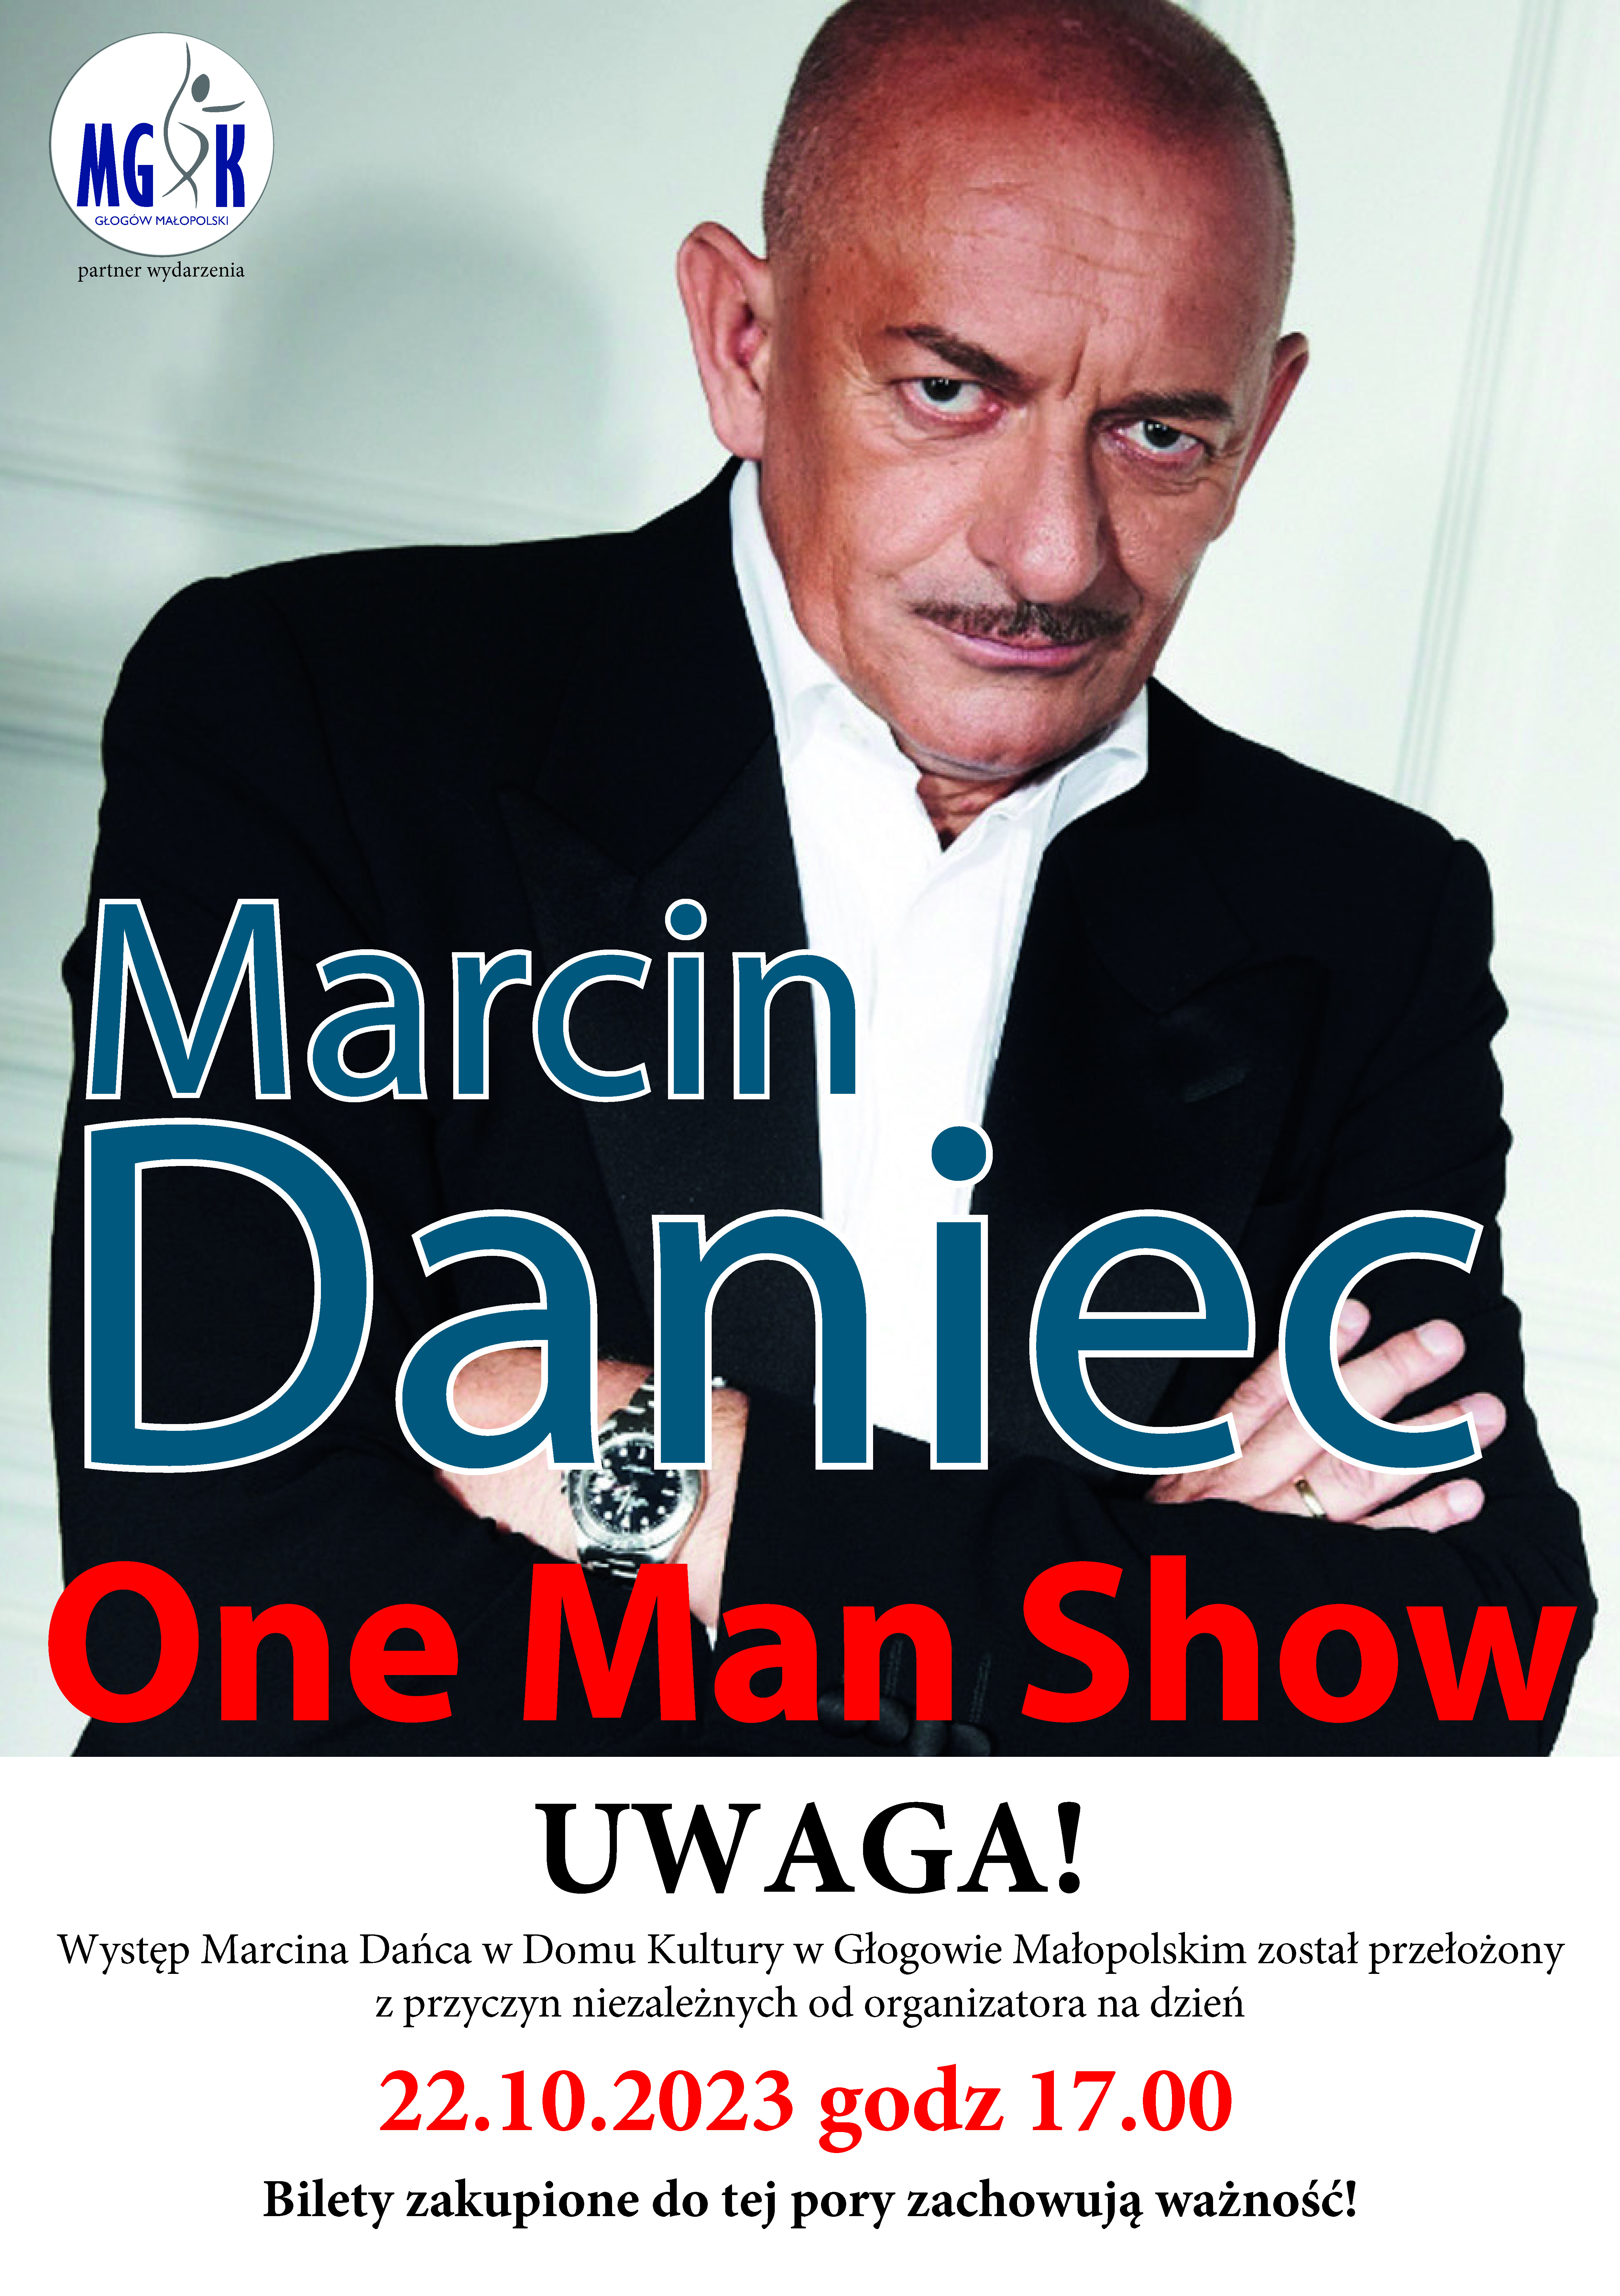 UWAGA! Marcin Daniec - One Man Show - Występ przeniesiony na 20 października 2023 r.